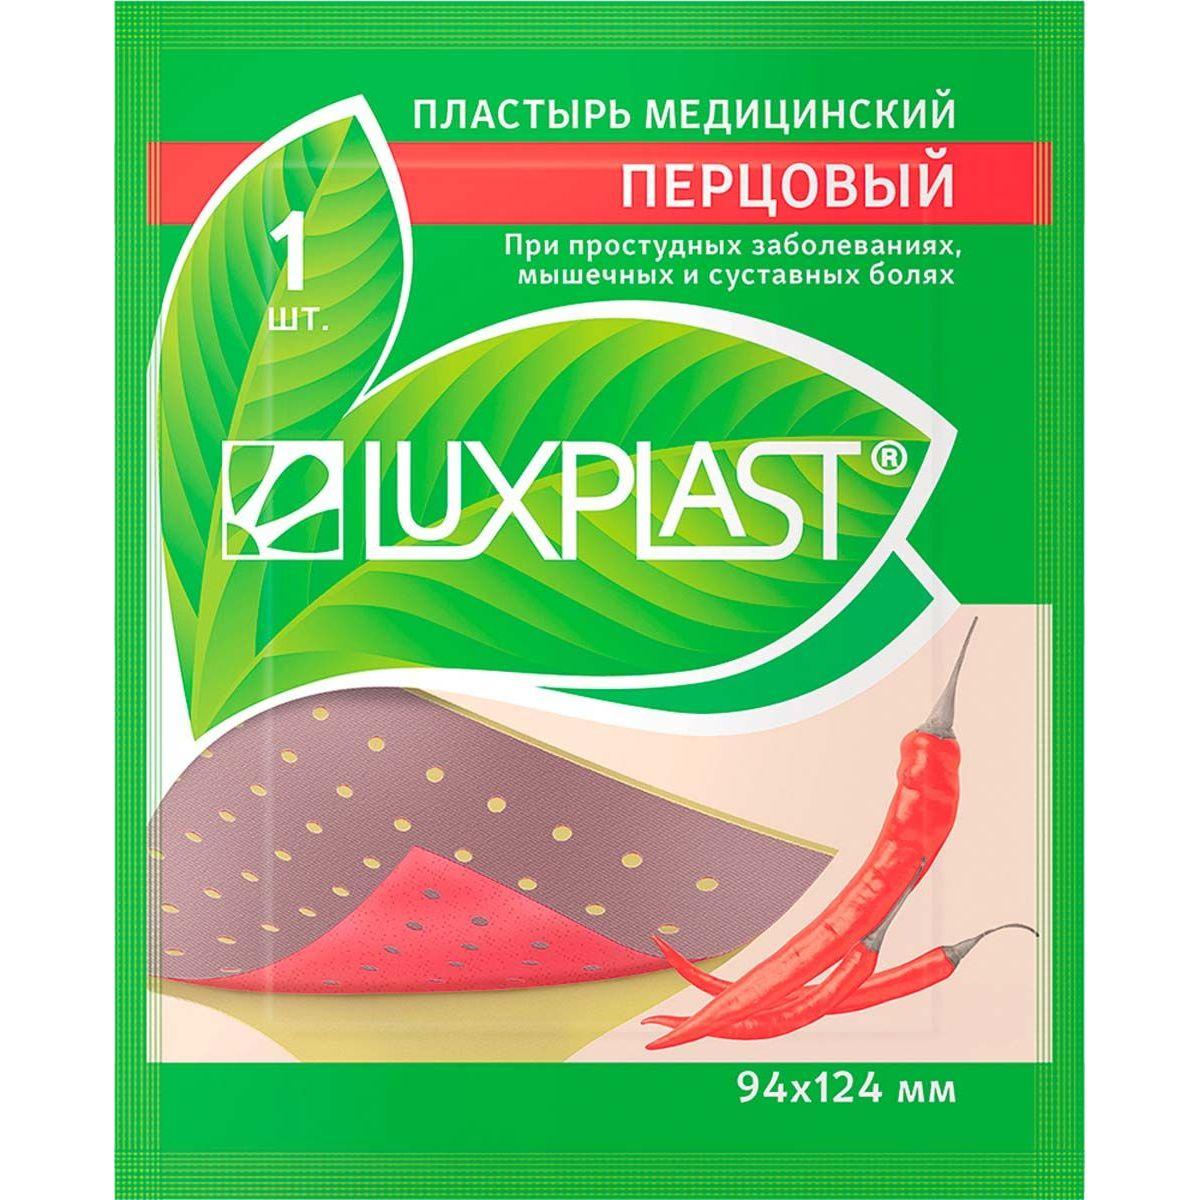 Купить Пластырь Luxplast перцовый 9, 4x12, 4 см